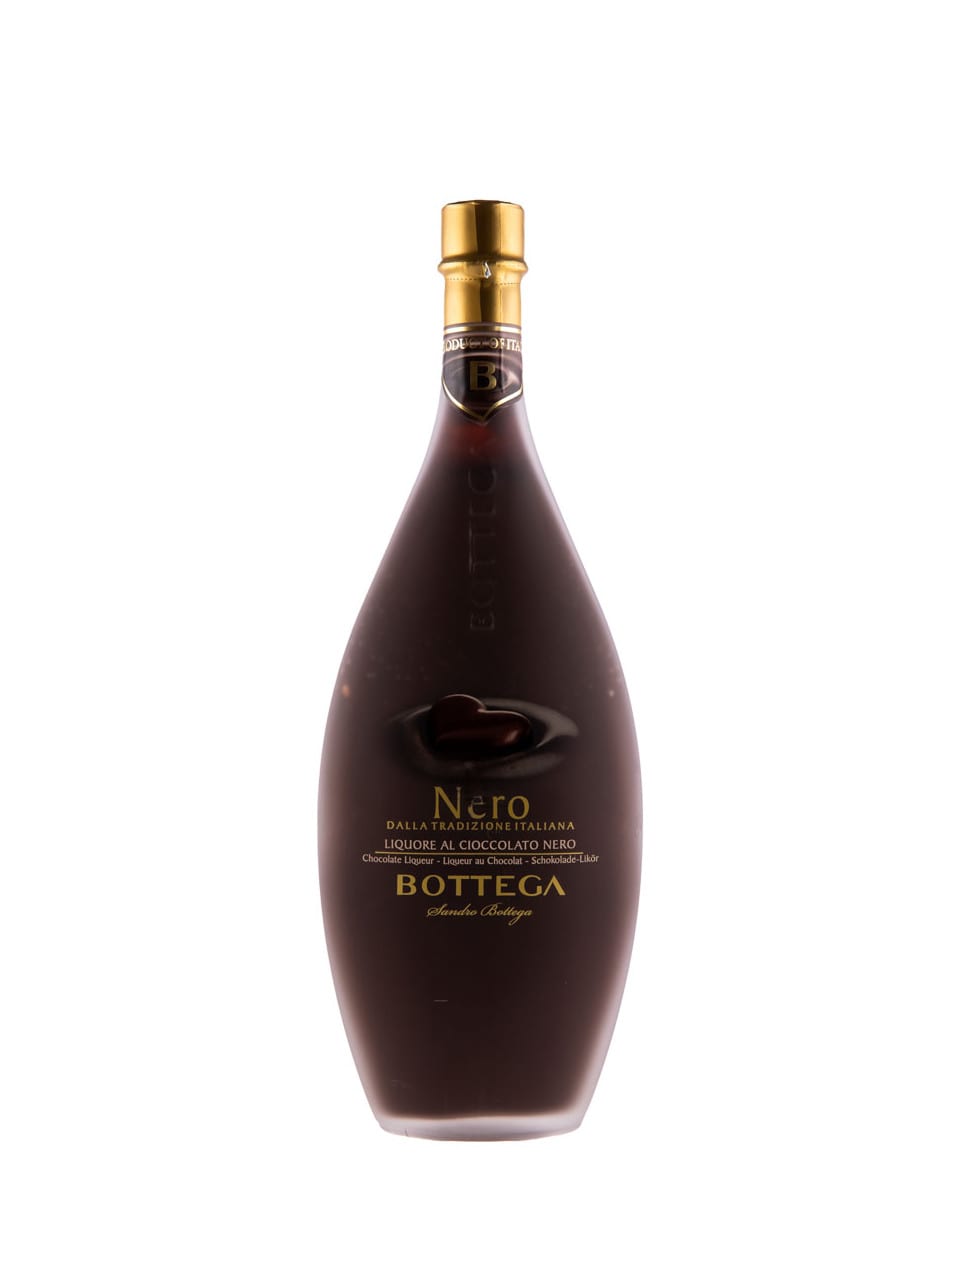 Nero Liquore Bottega